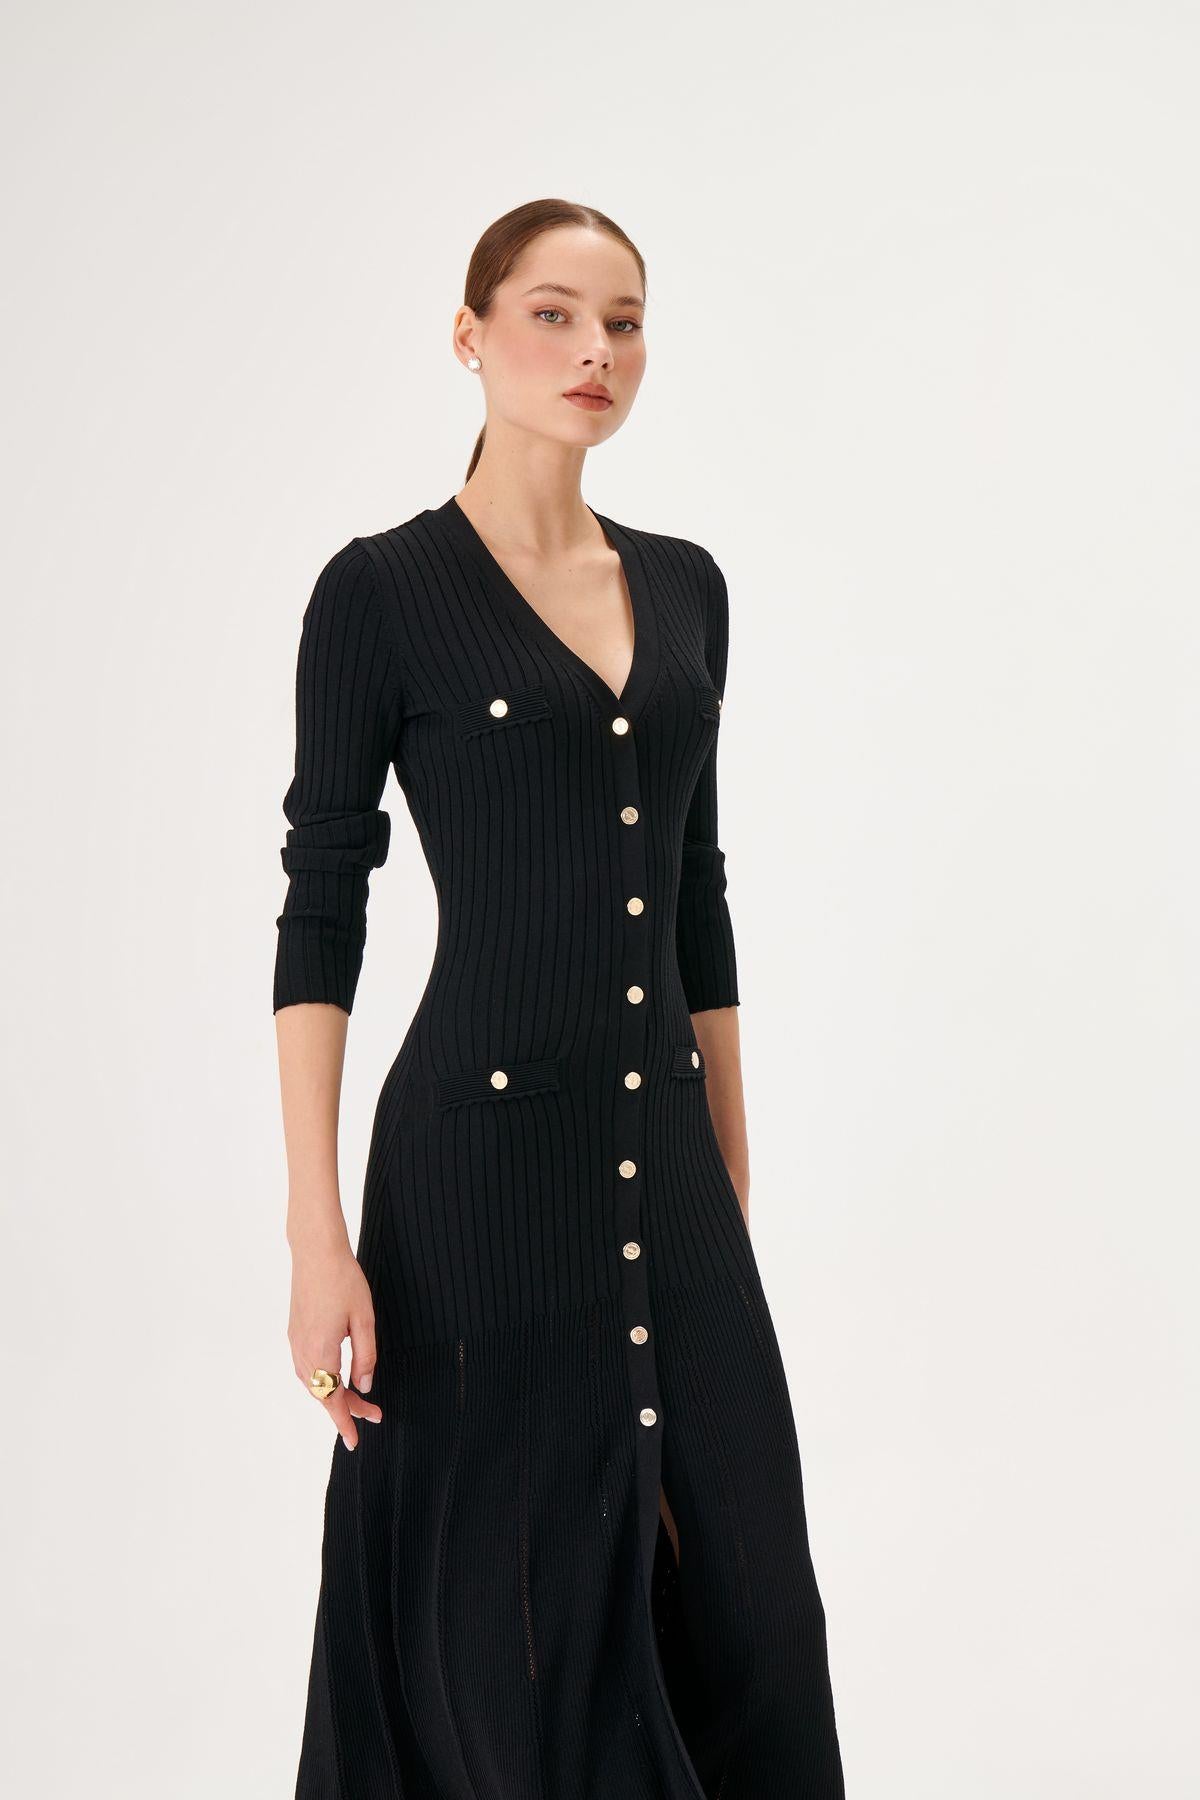 Button Detailed A-Line Midi Black Knitwear Dress